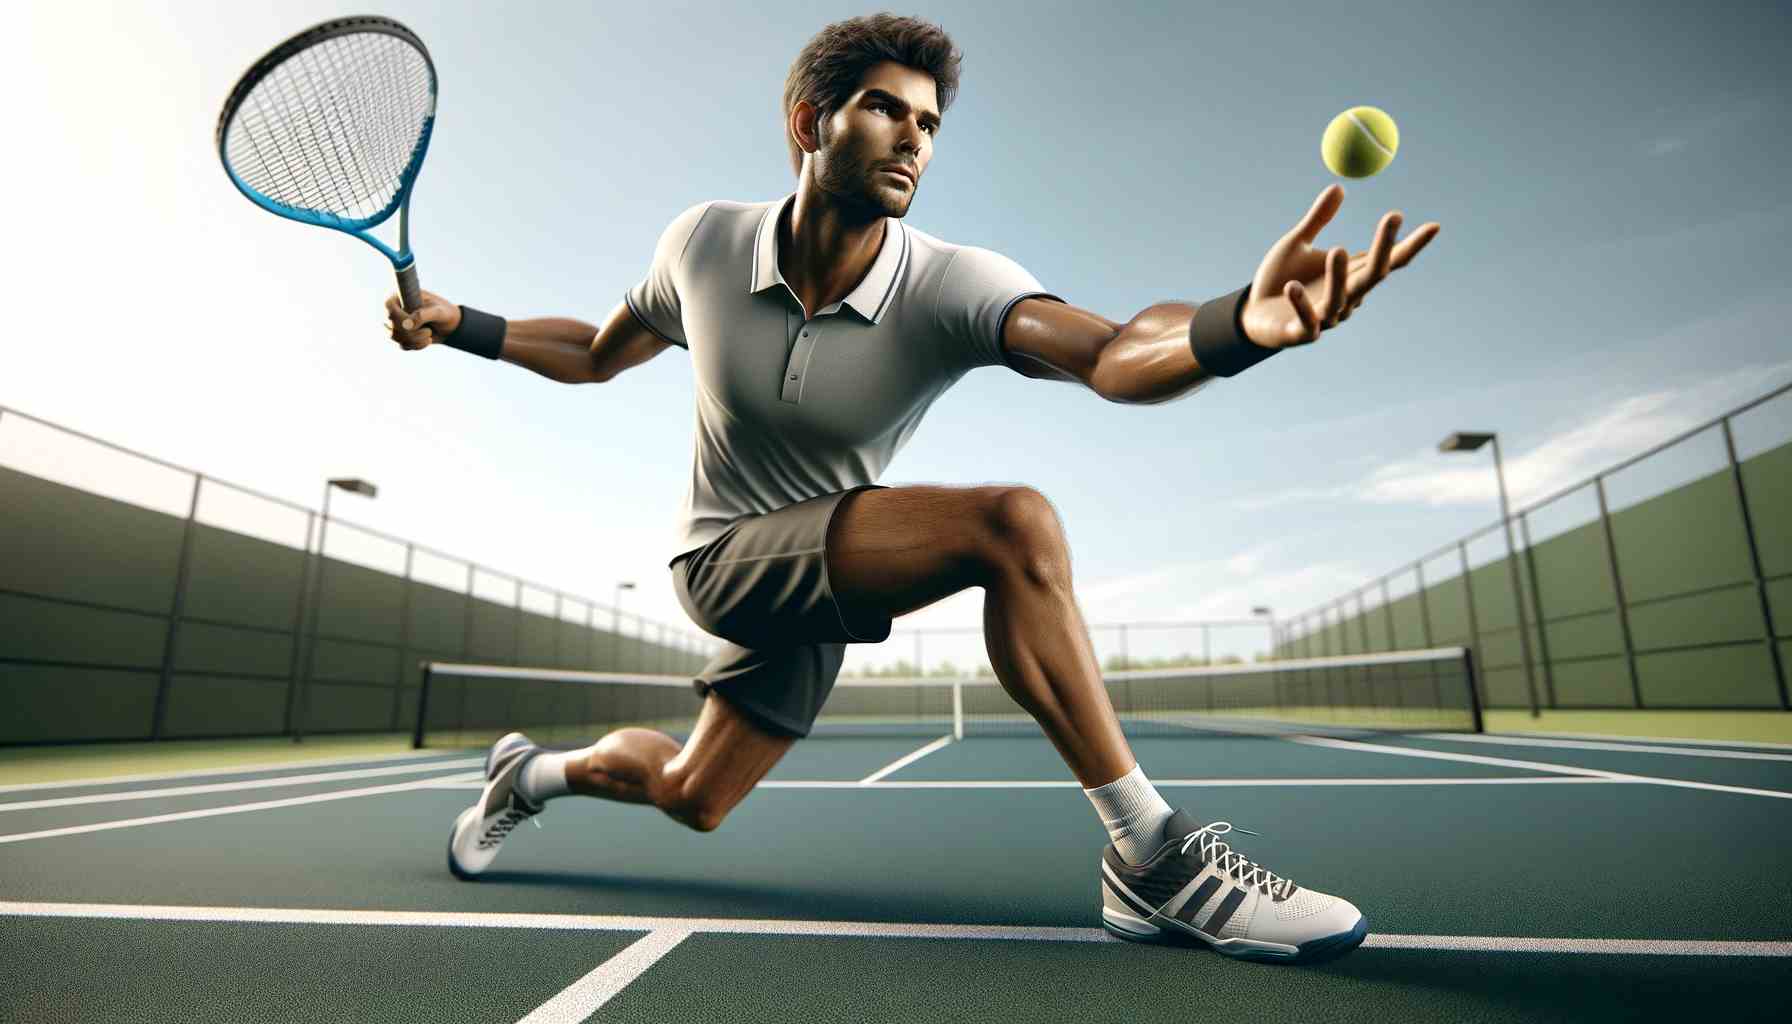 Valósághű kép egyetlen teniszjátékosról készült közeli felvétel a szabadban, szélesvásznú képarányban. A képnek meg kell örökítenie a játékost